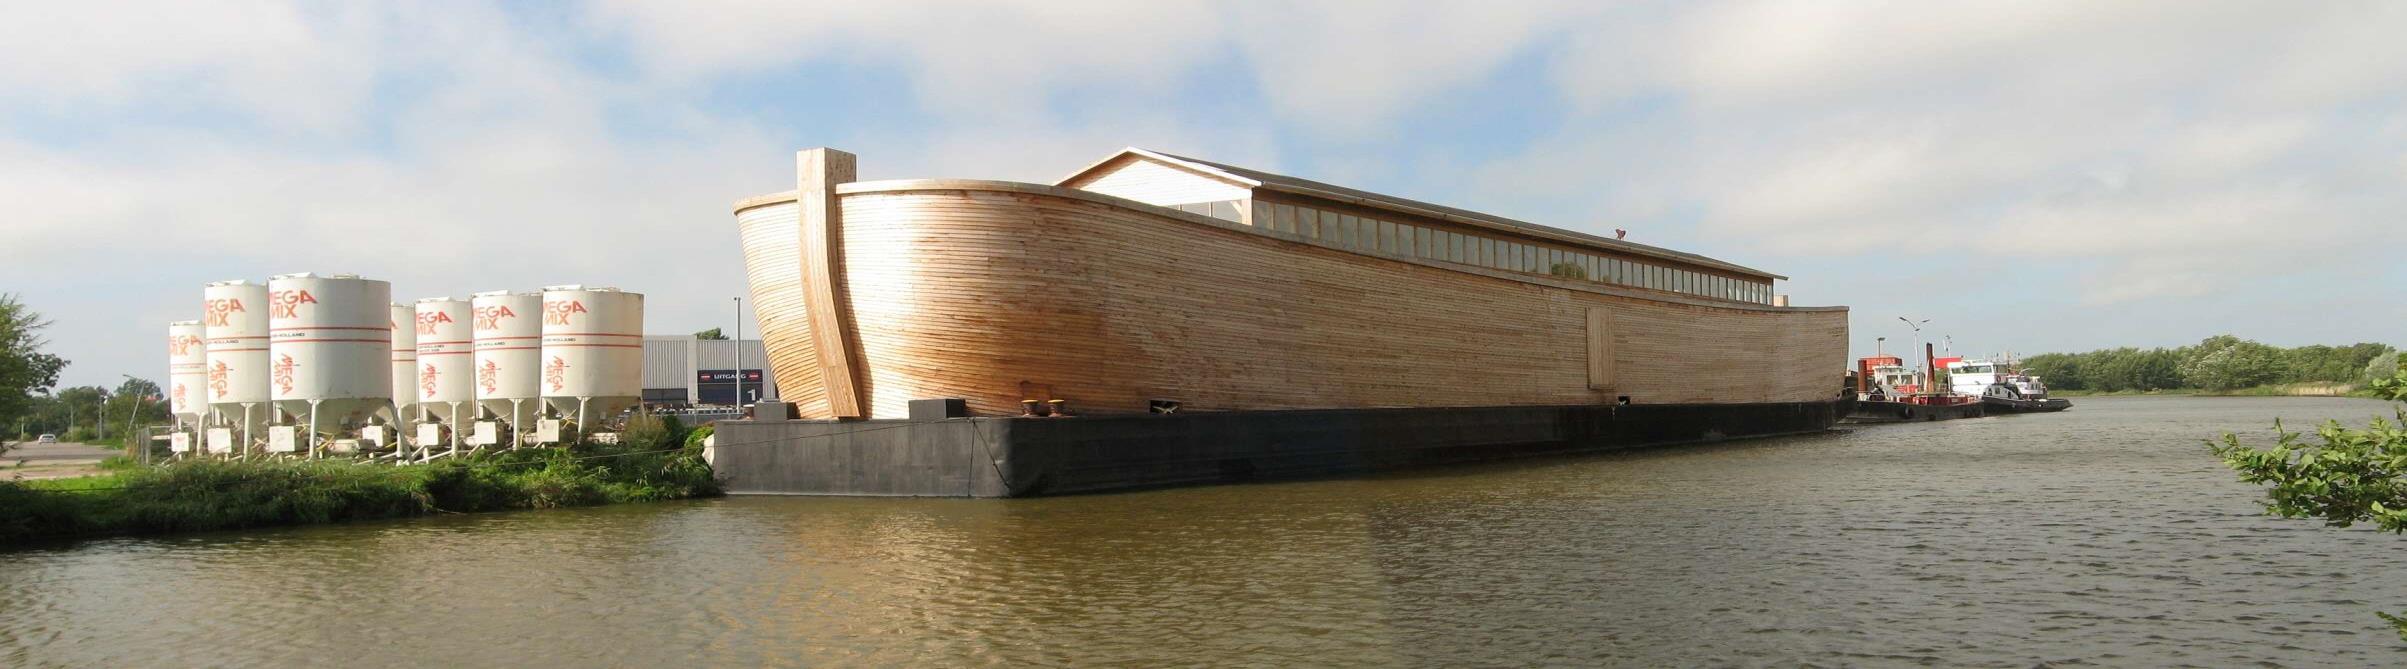 Preservação: Histórico Arca de Noé: talvez a primeira tentativa consciente de preservação.